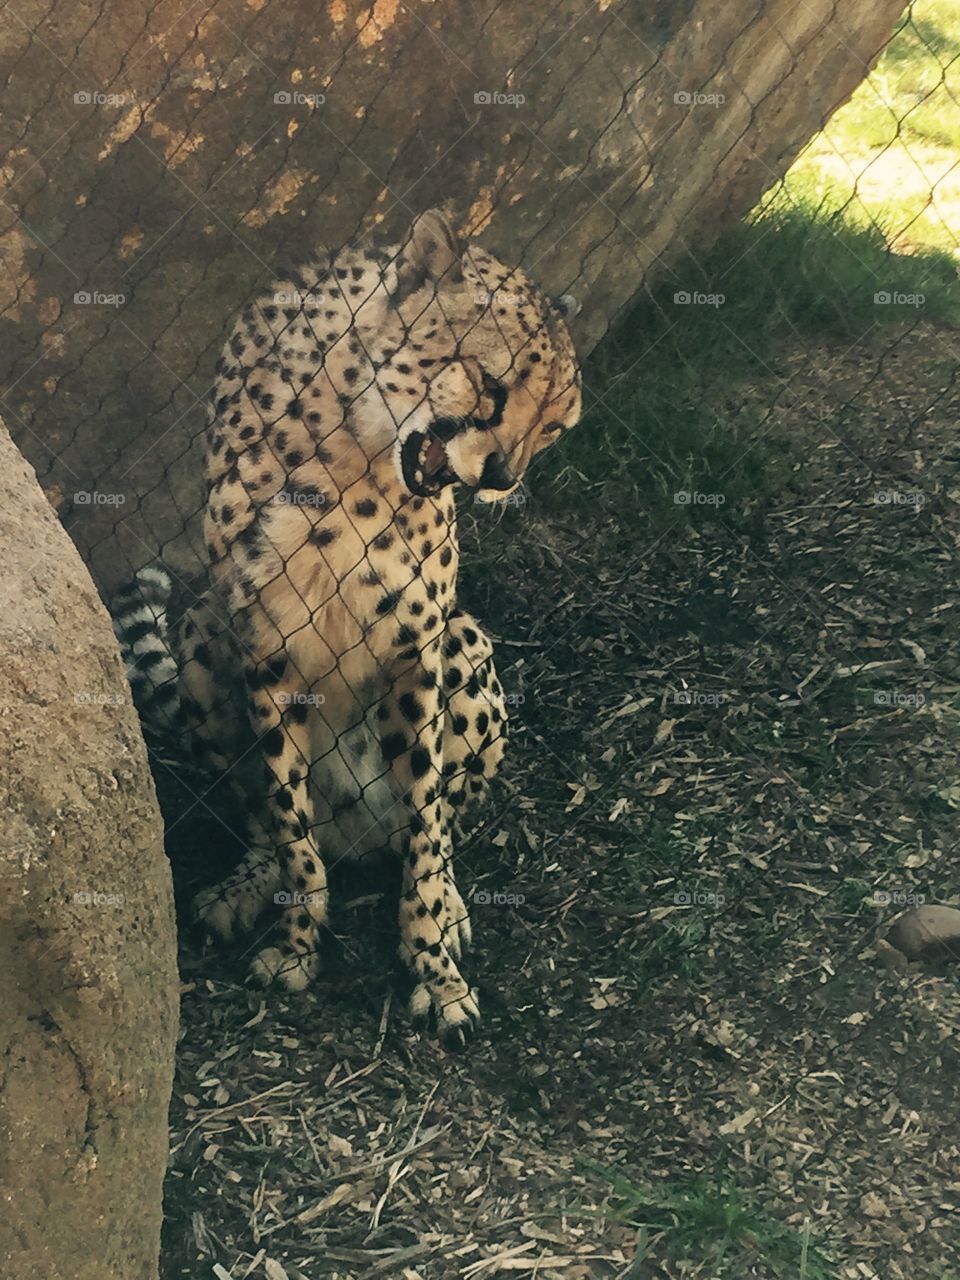 Cheetah at the zoo